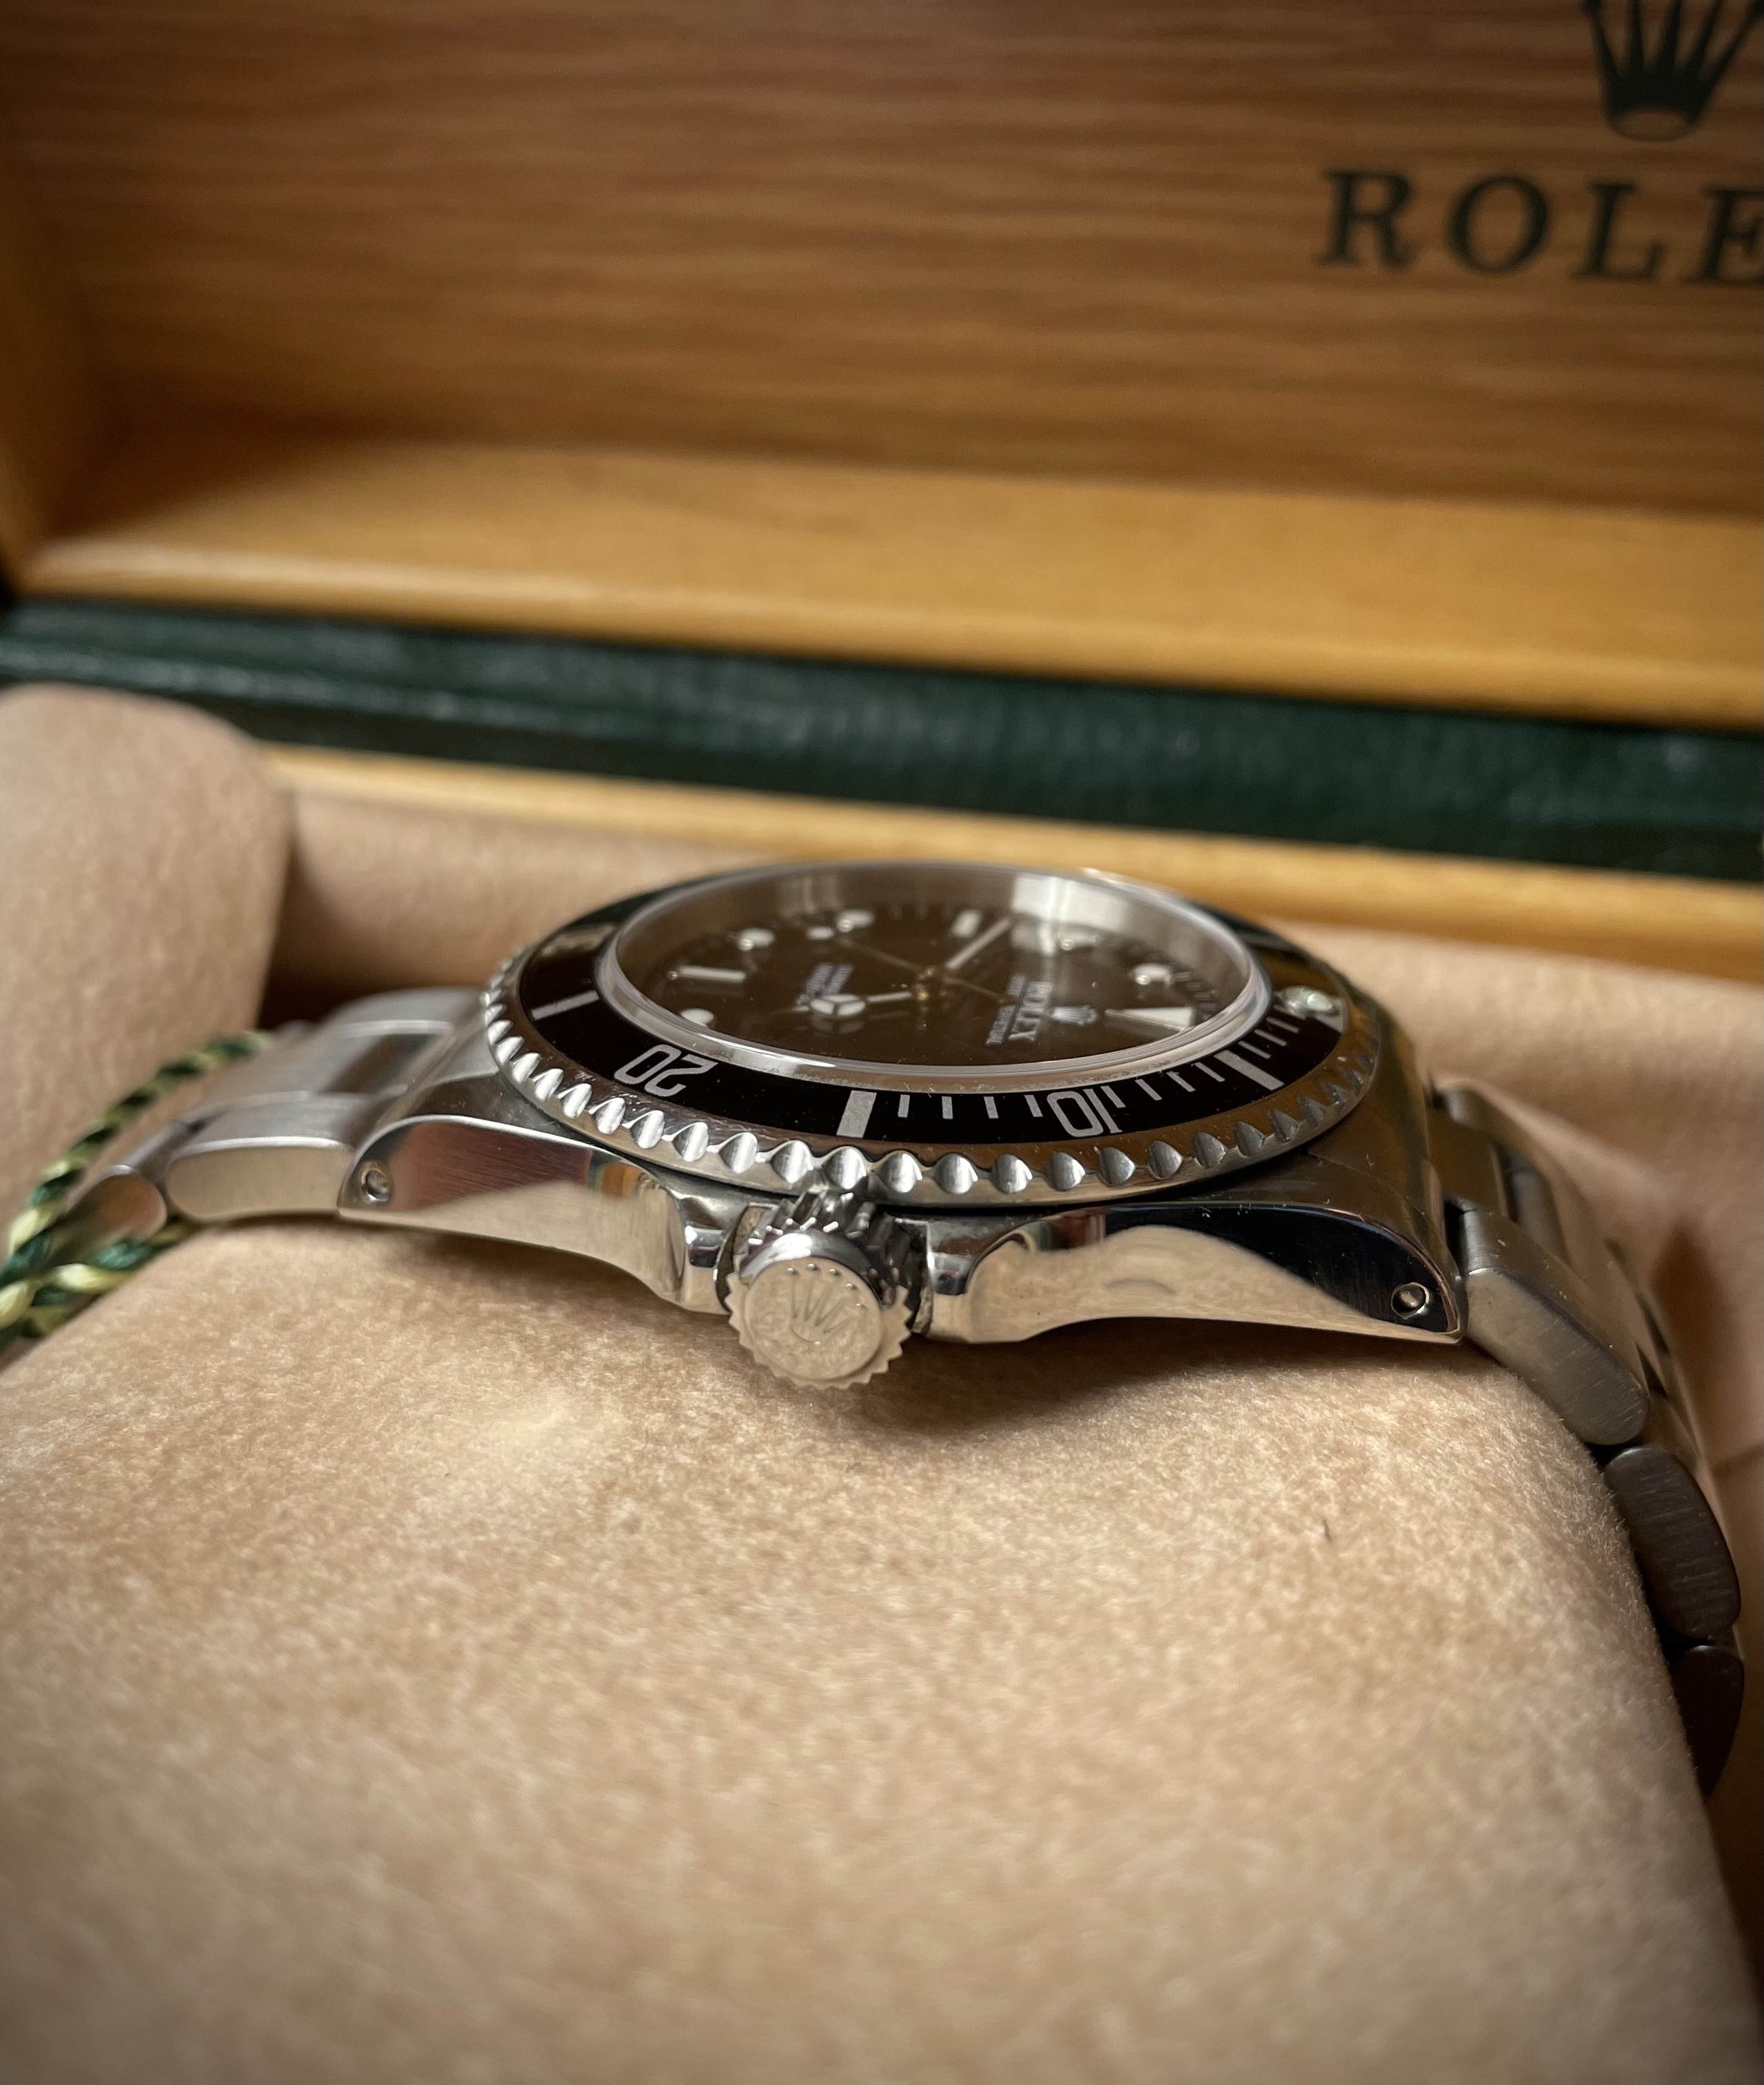 rolex - [Vendue] Rolex Submariner 14060 - 8100 € Rerhpp